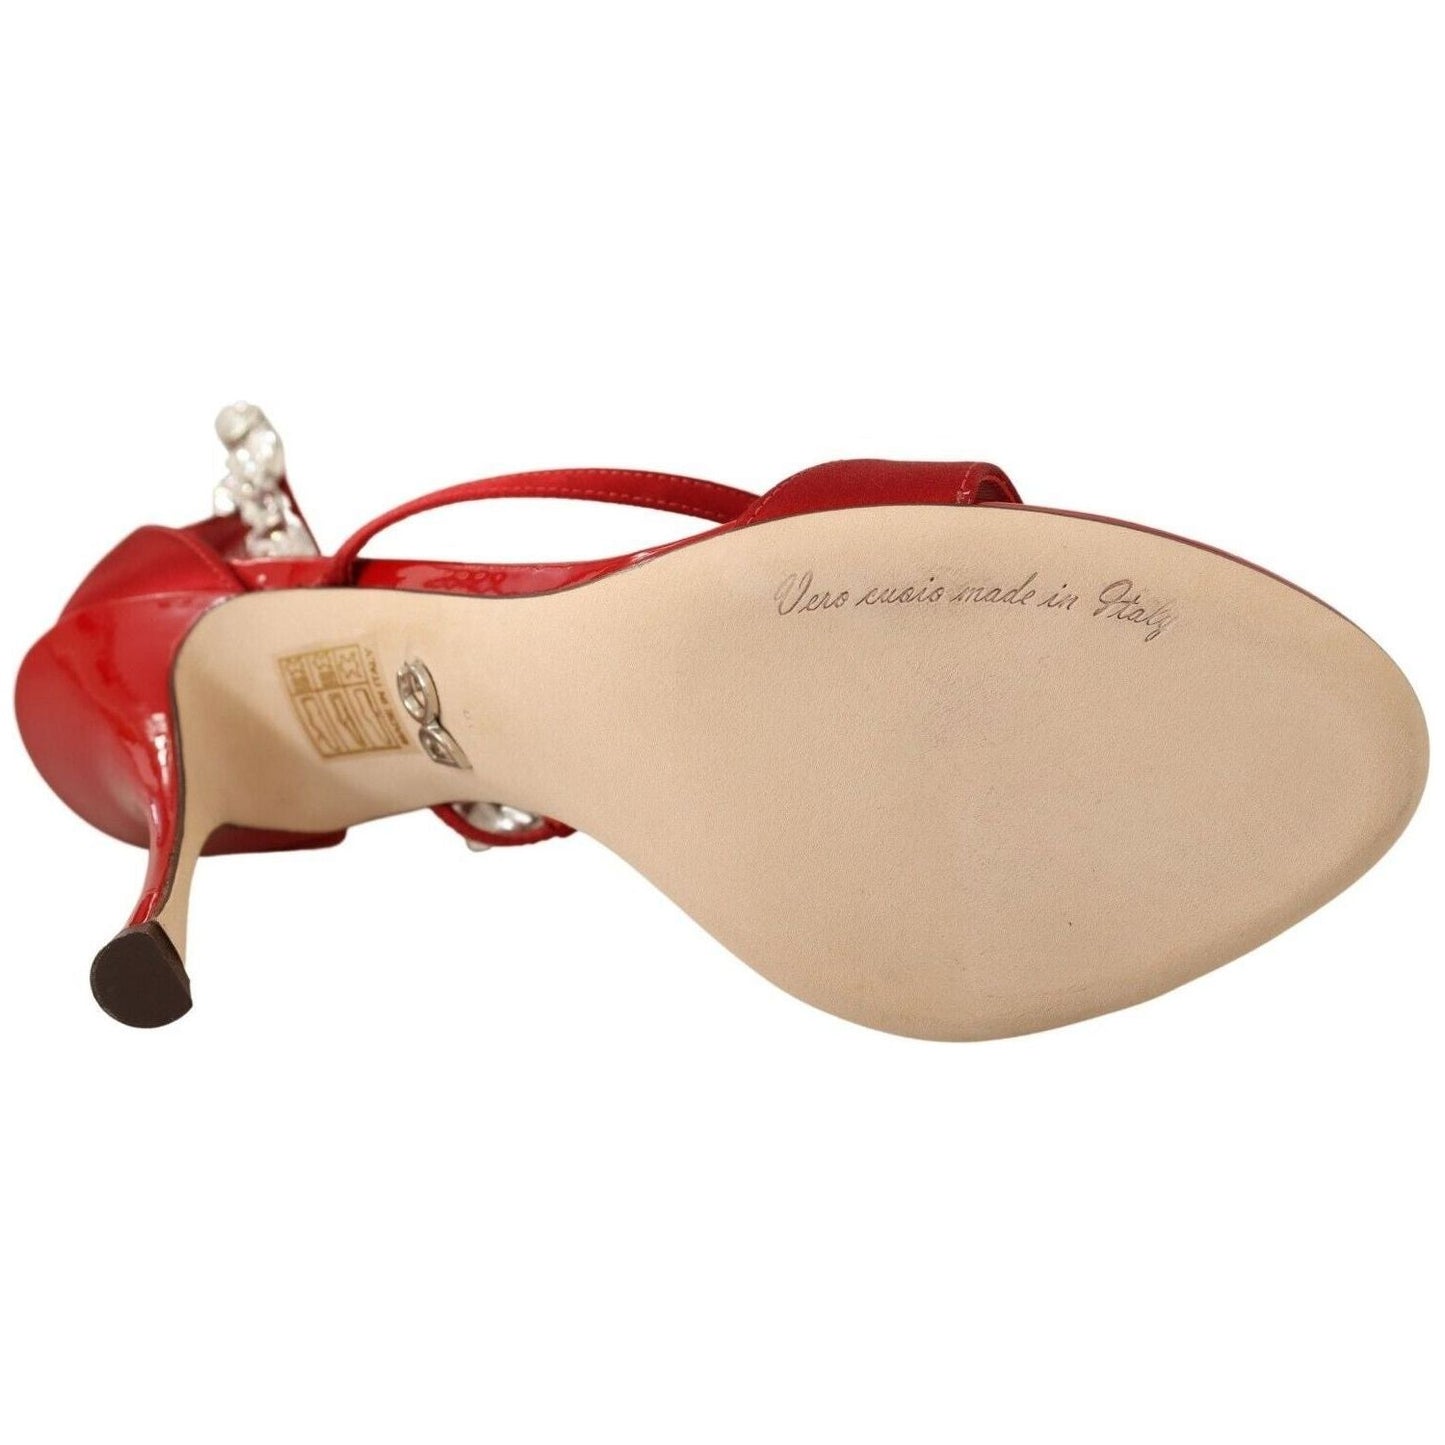 Dolce & Gabbana Red Crystal-Embellished Heel Sandals Heeled Sandals red-satin-crystals-sandals-keira-heels-shoes s-l1600-2022-11-15T152023.743-302d3447-f1e.jpg